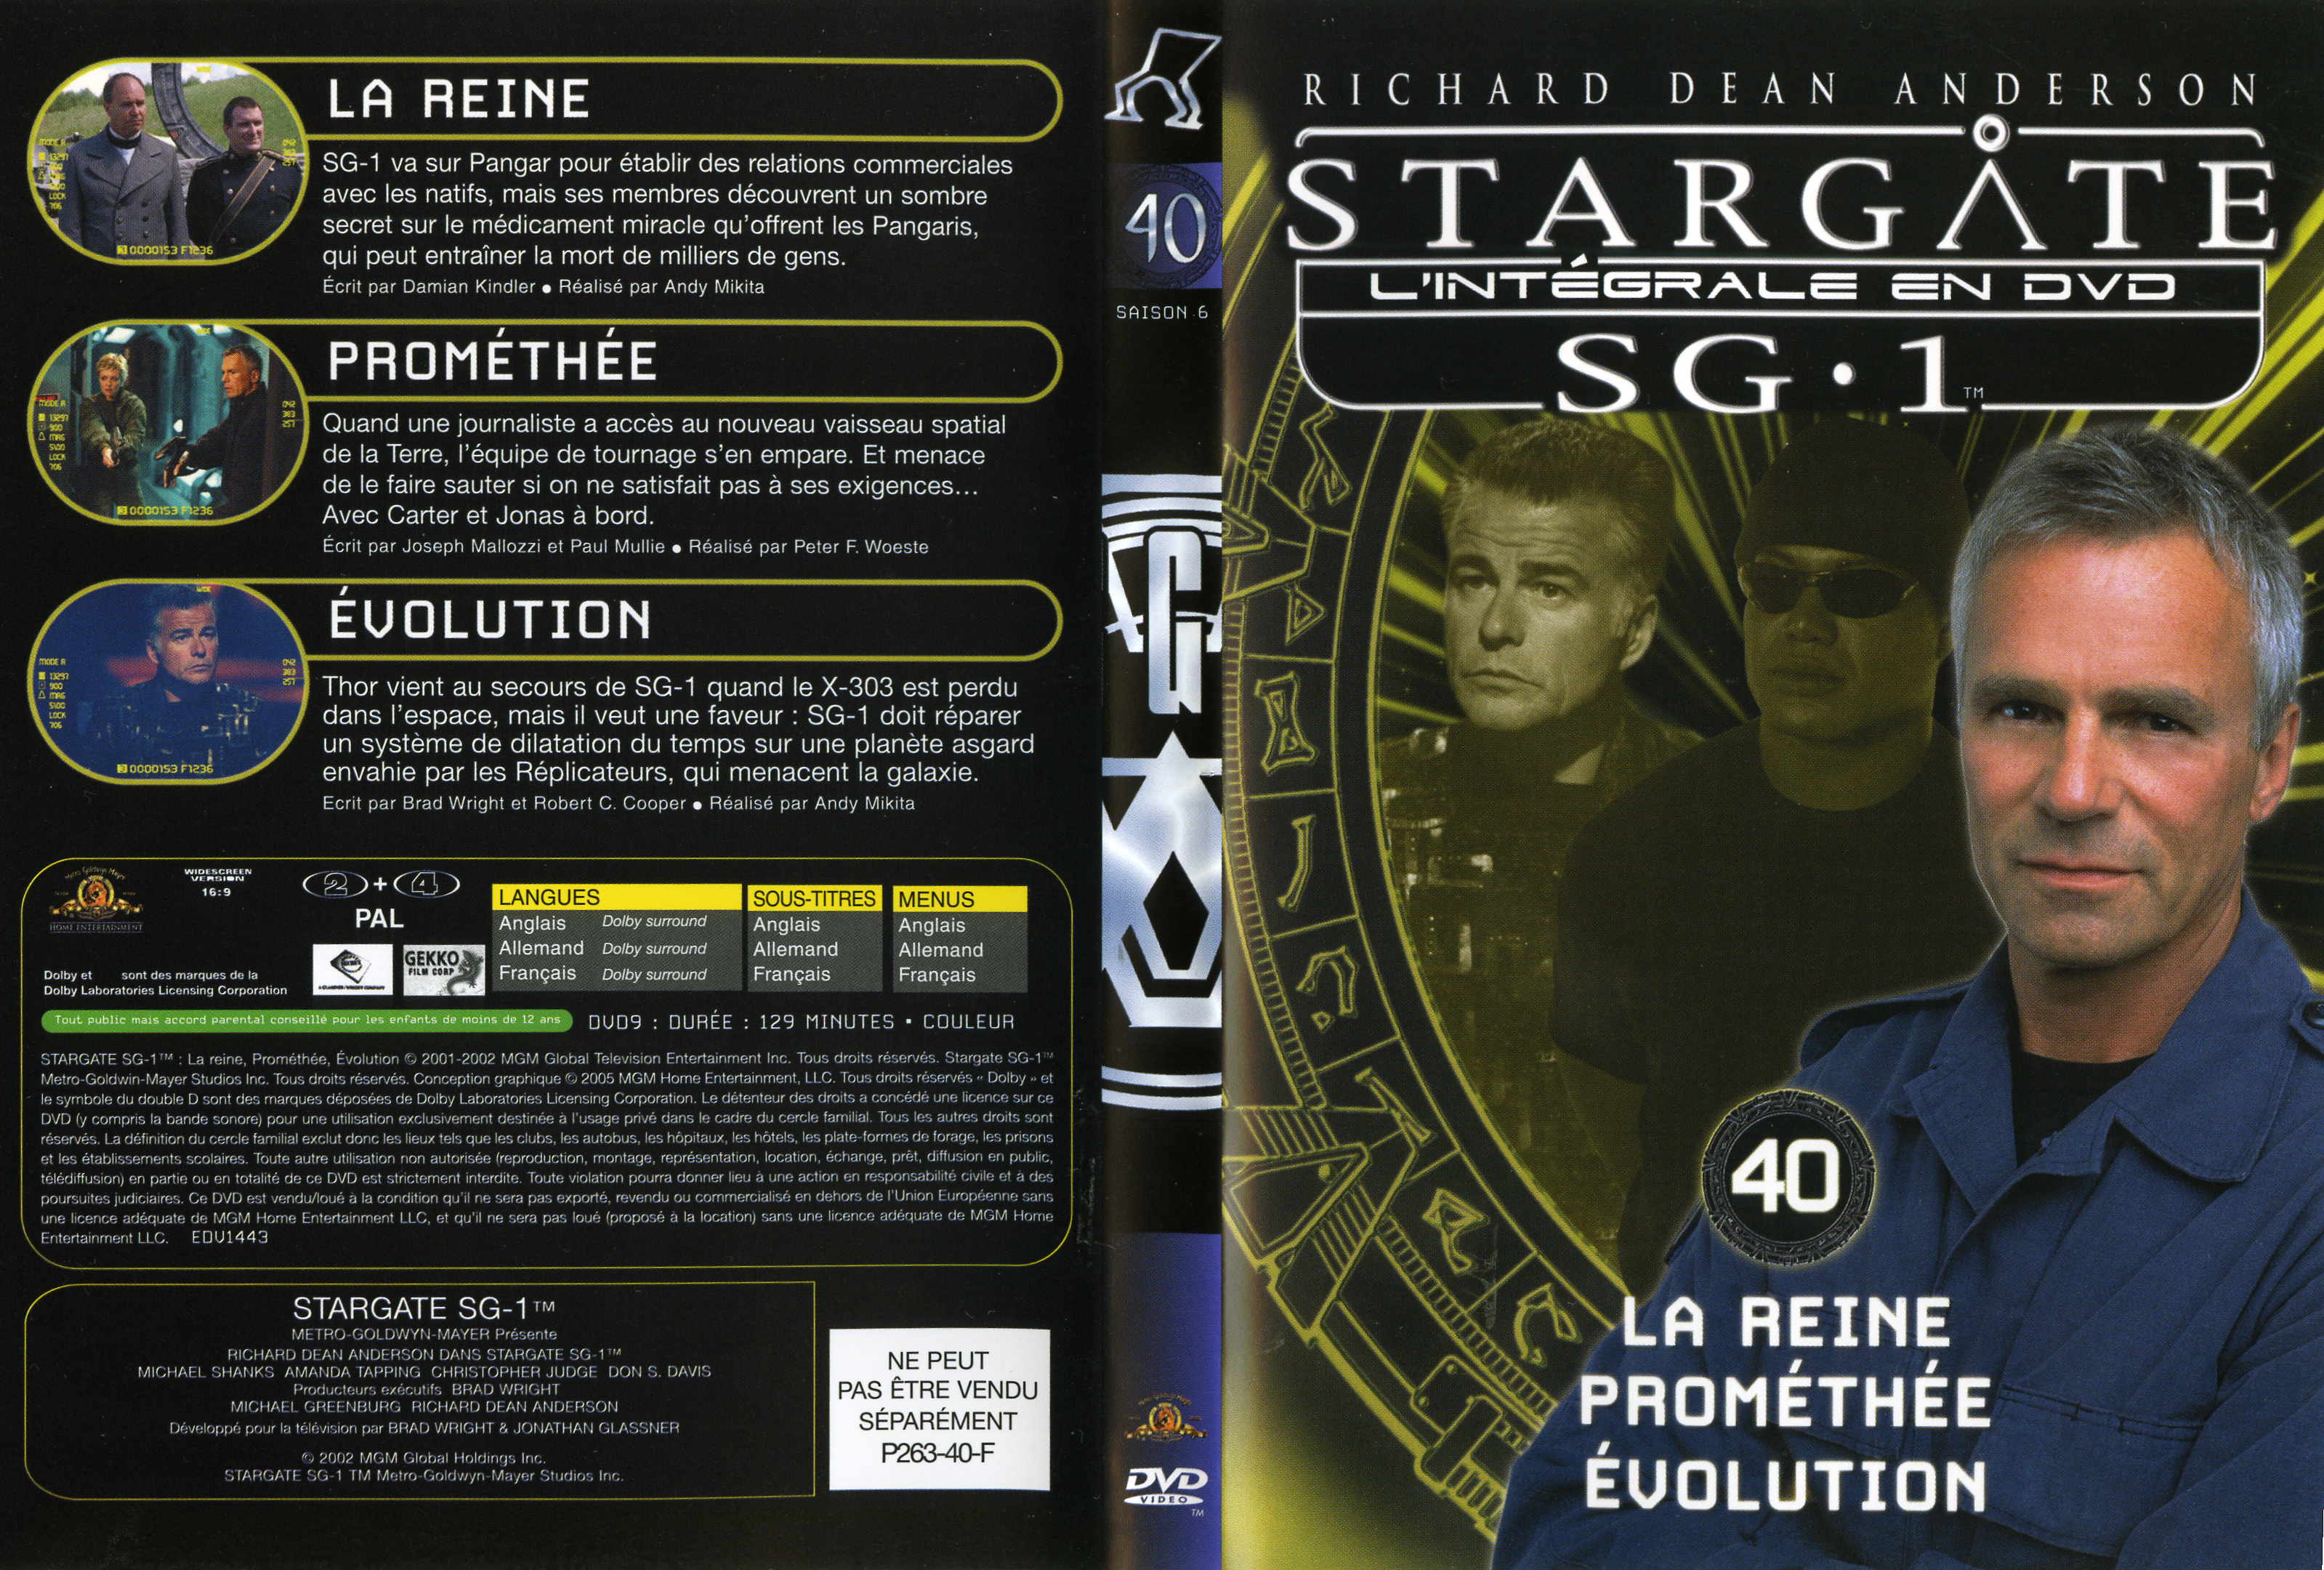 Jaquette DVD Stargate saison 6 vol 40